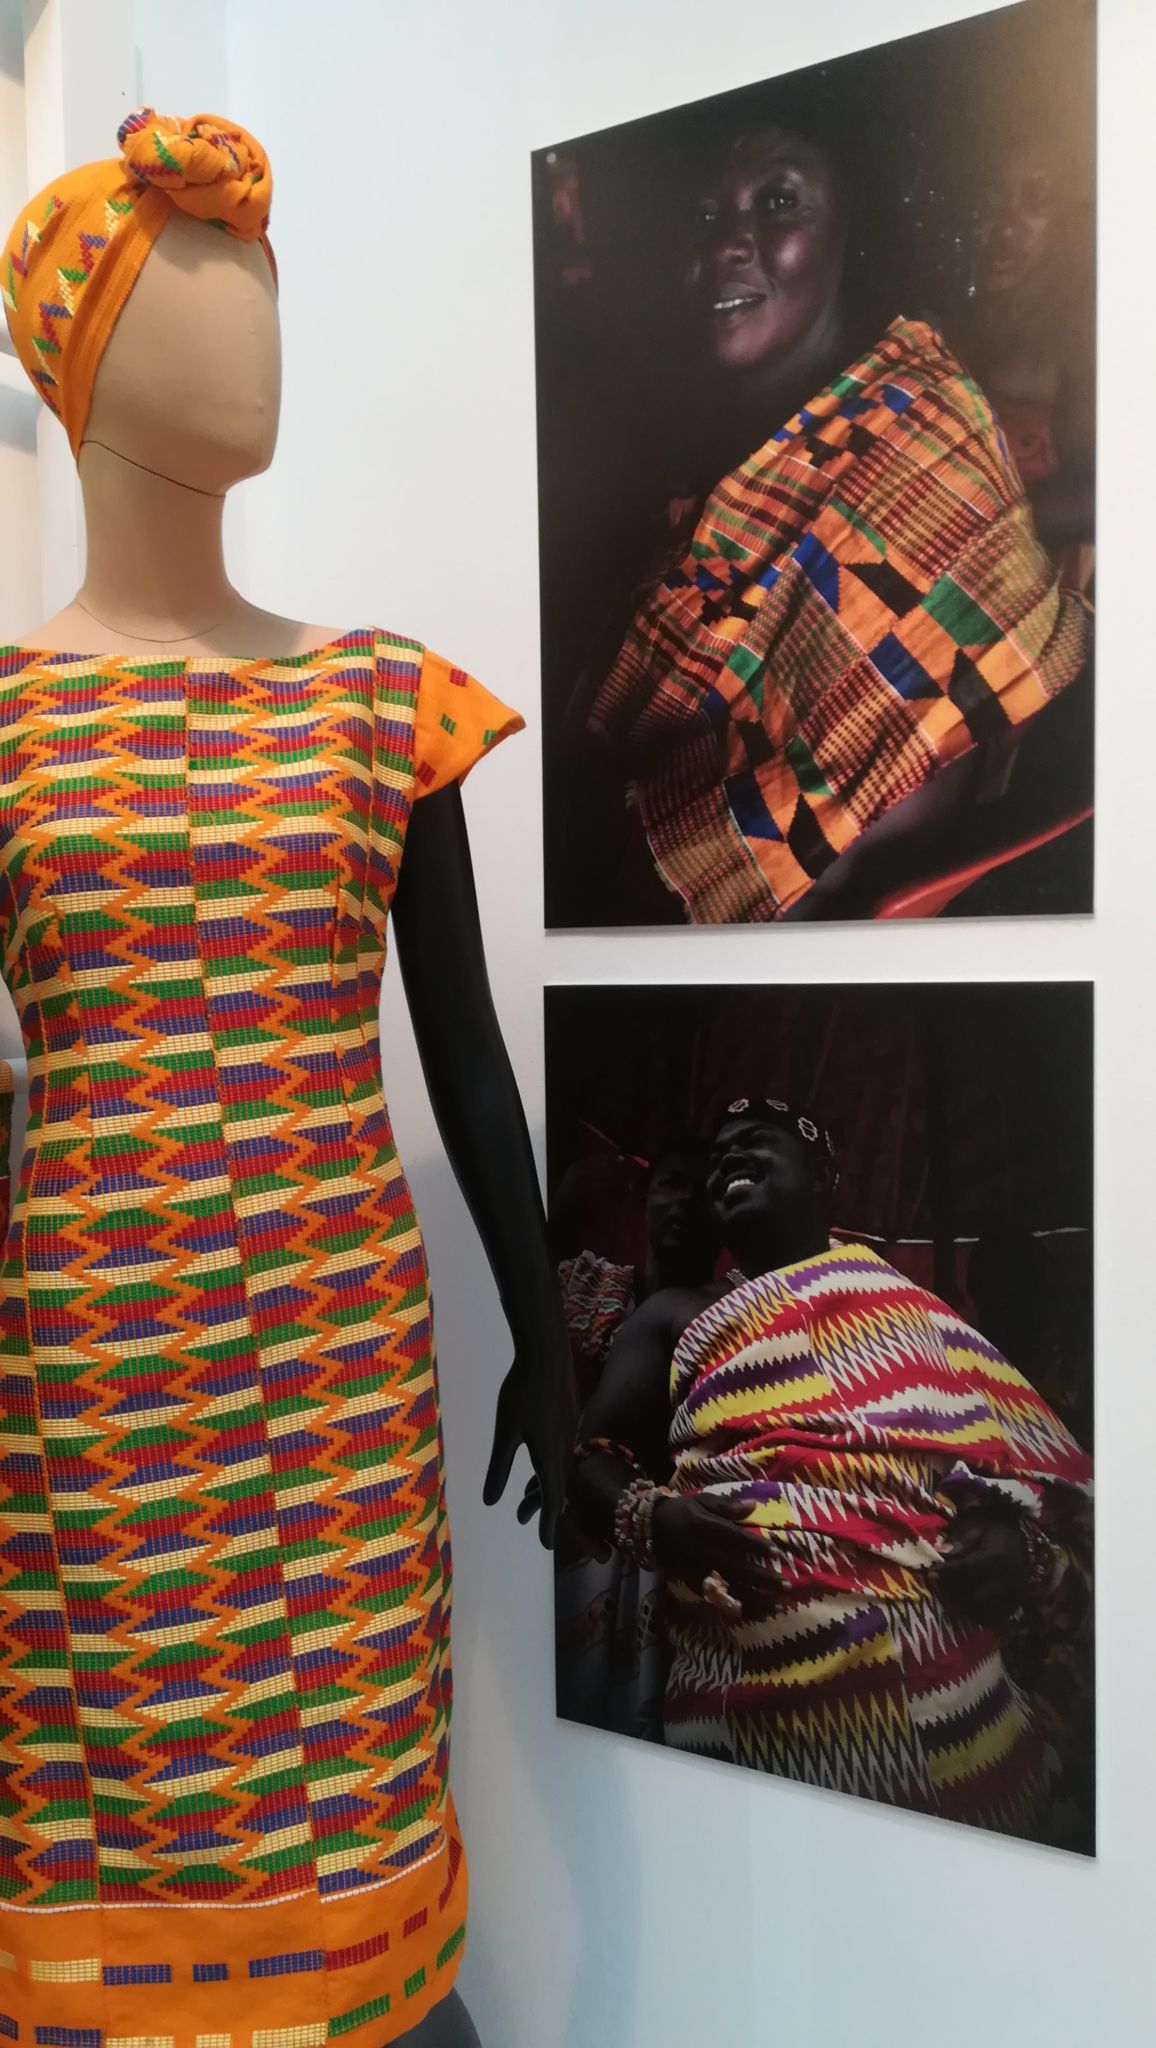 Fotografías de Kim Manresa expuesta en "El lenguaje de las telas” junto a los diseños de Maica de las Carreras.